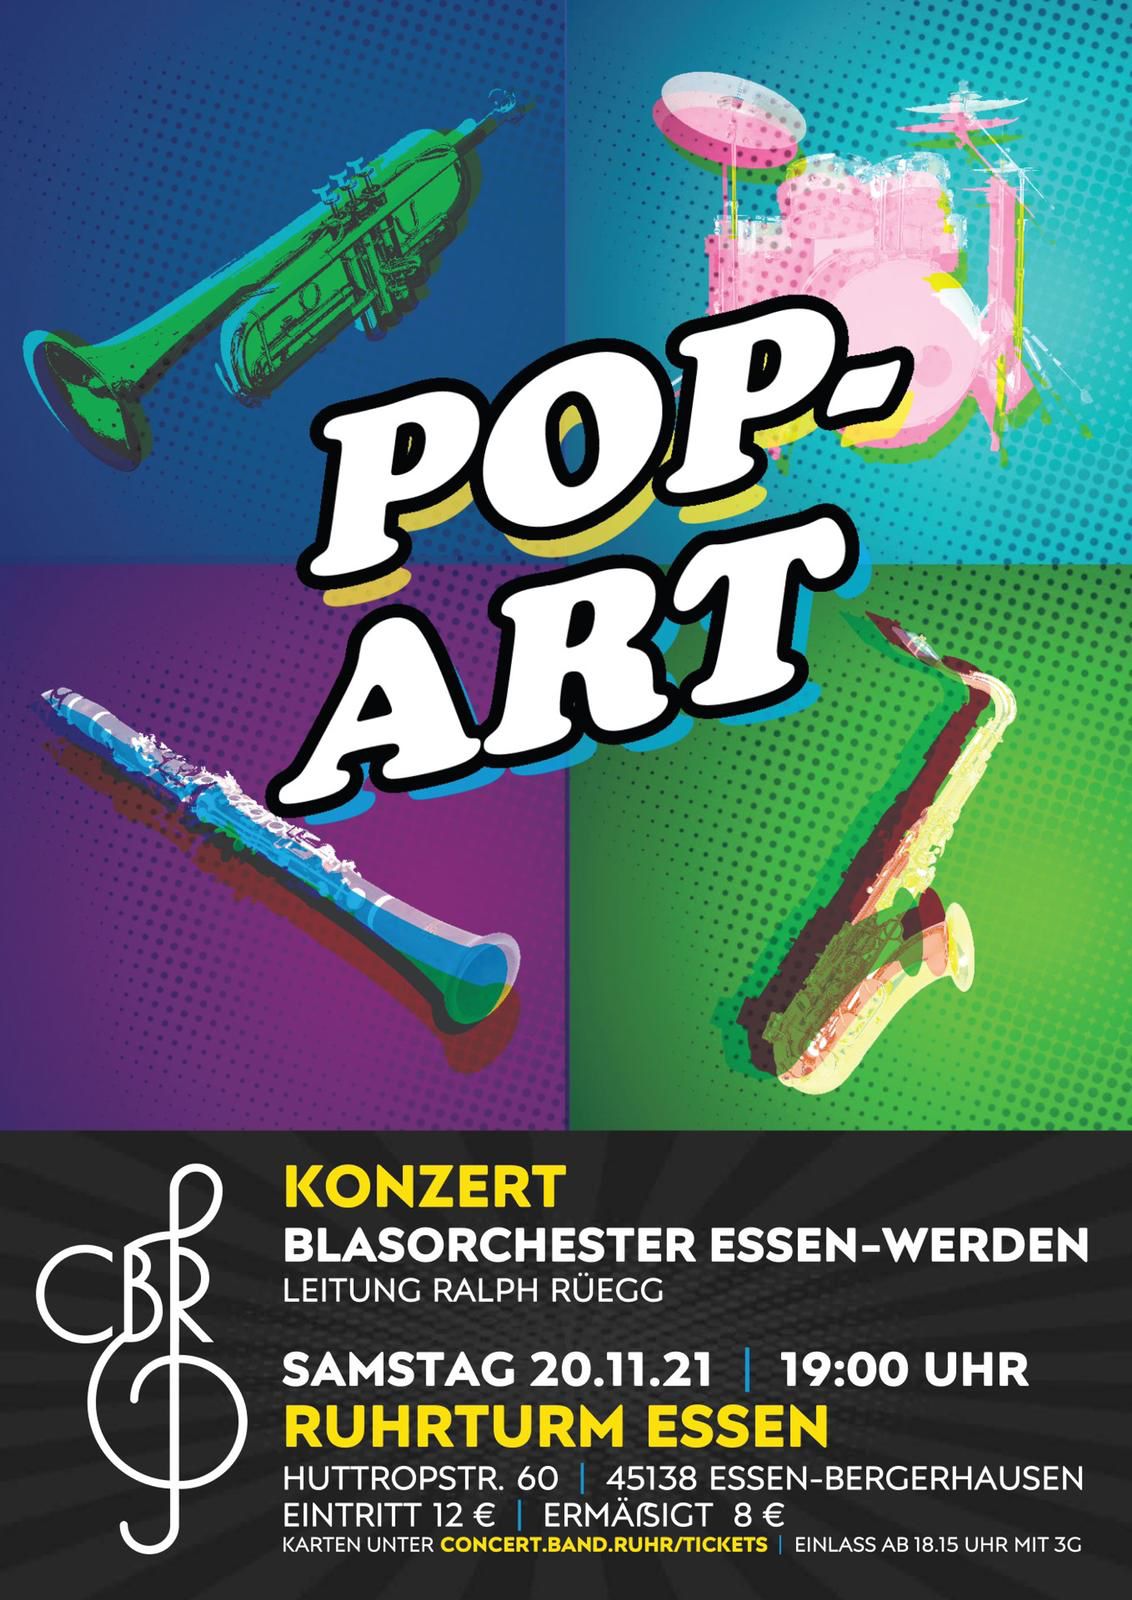 Blasorchester Essen-Werden: Sonderkonzert POP-ART am 20.11.2021!